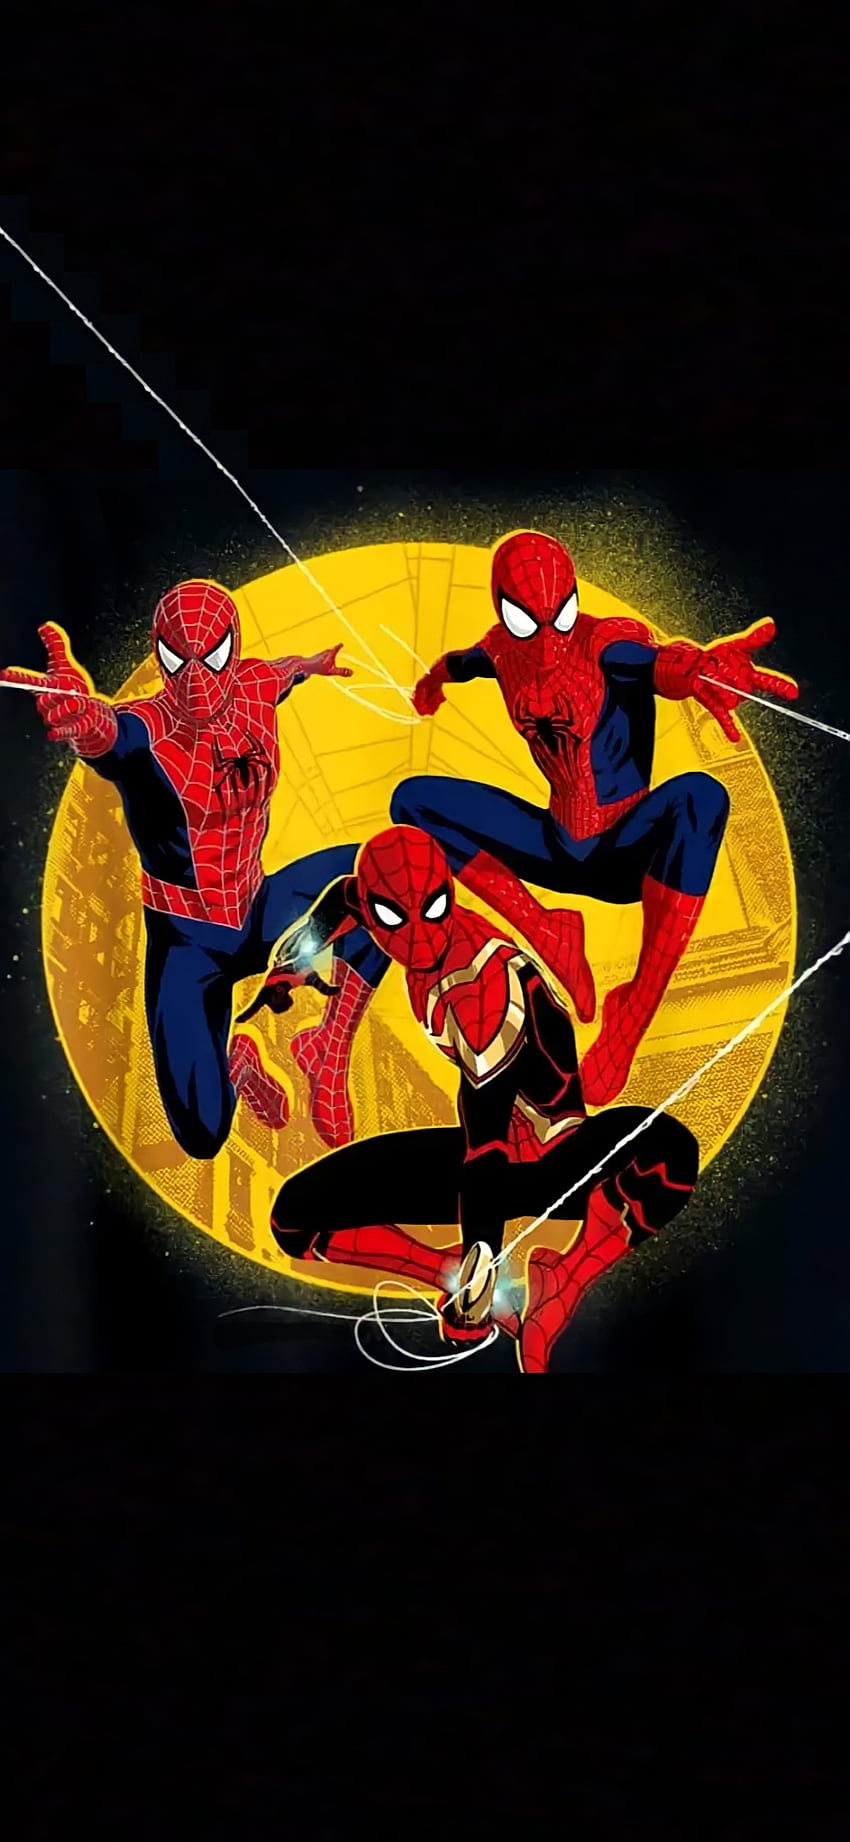 Spider-Man No Way Home, Tobey Maguire, No way home, Peter Parker, Andrew Garfield, Spiderverse, Marvel, Tom Holland, Spidermen, El sorprendente hombre araña, Avengers, Spiderman, Cómic fondo de pantalla del teléfono